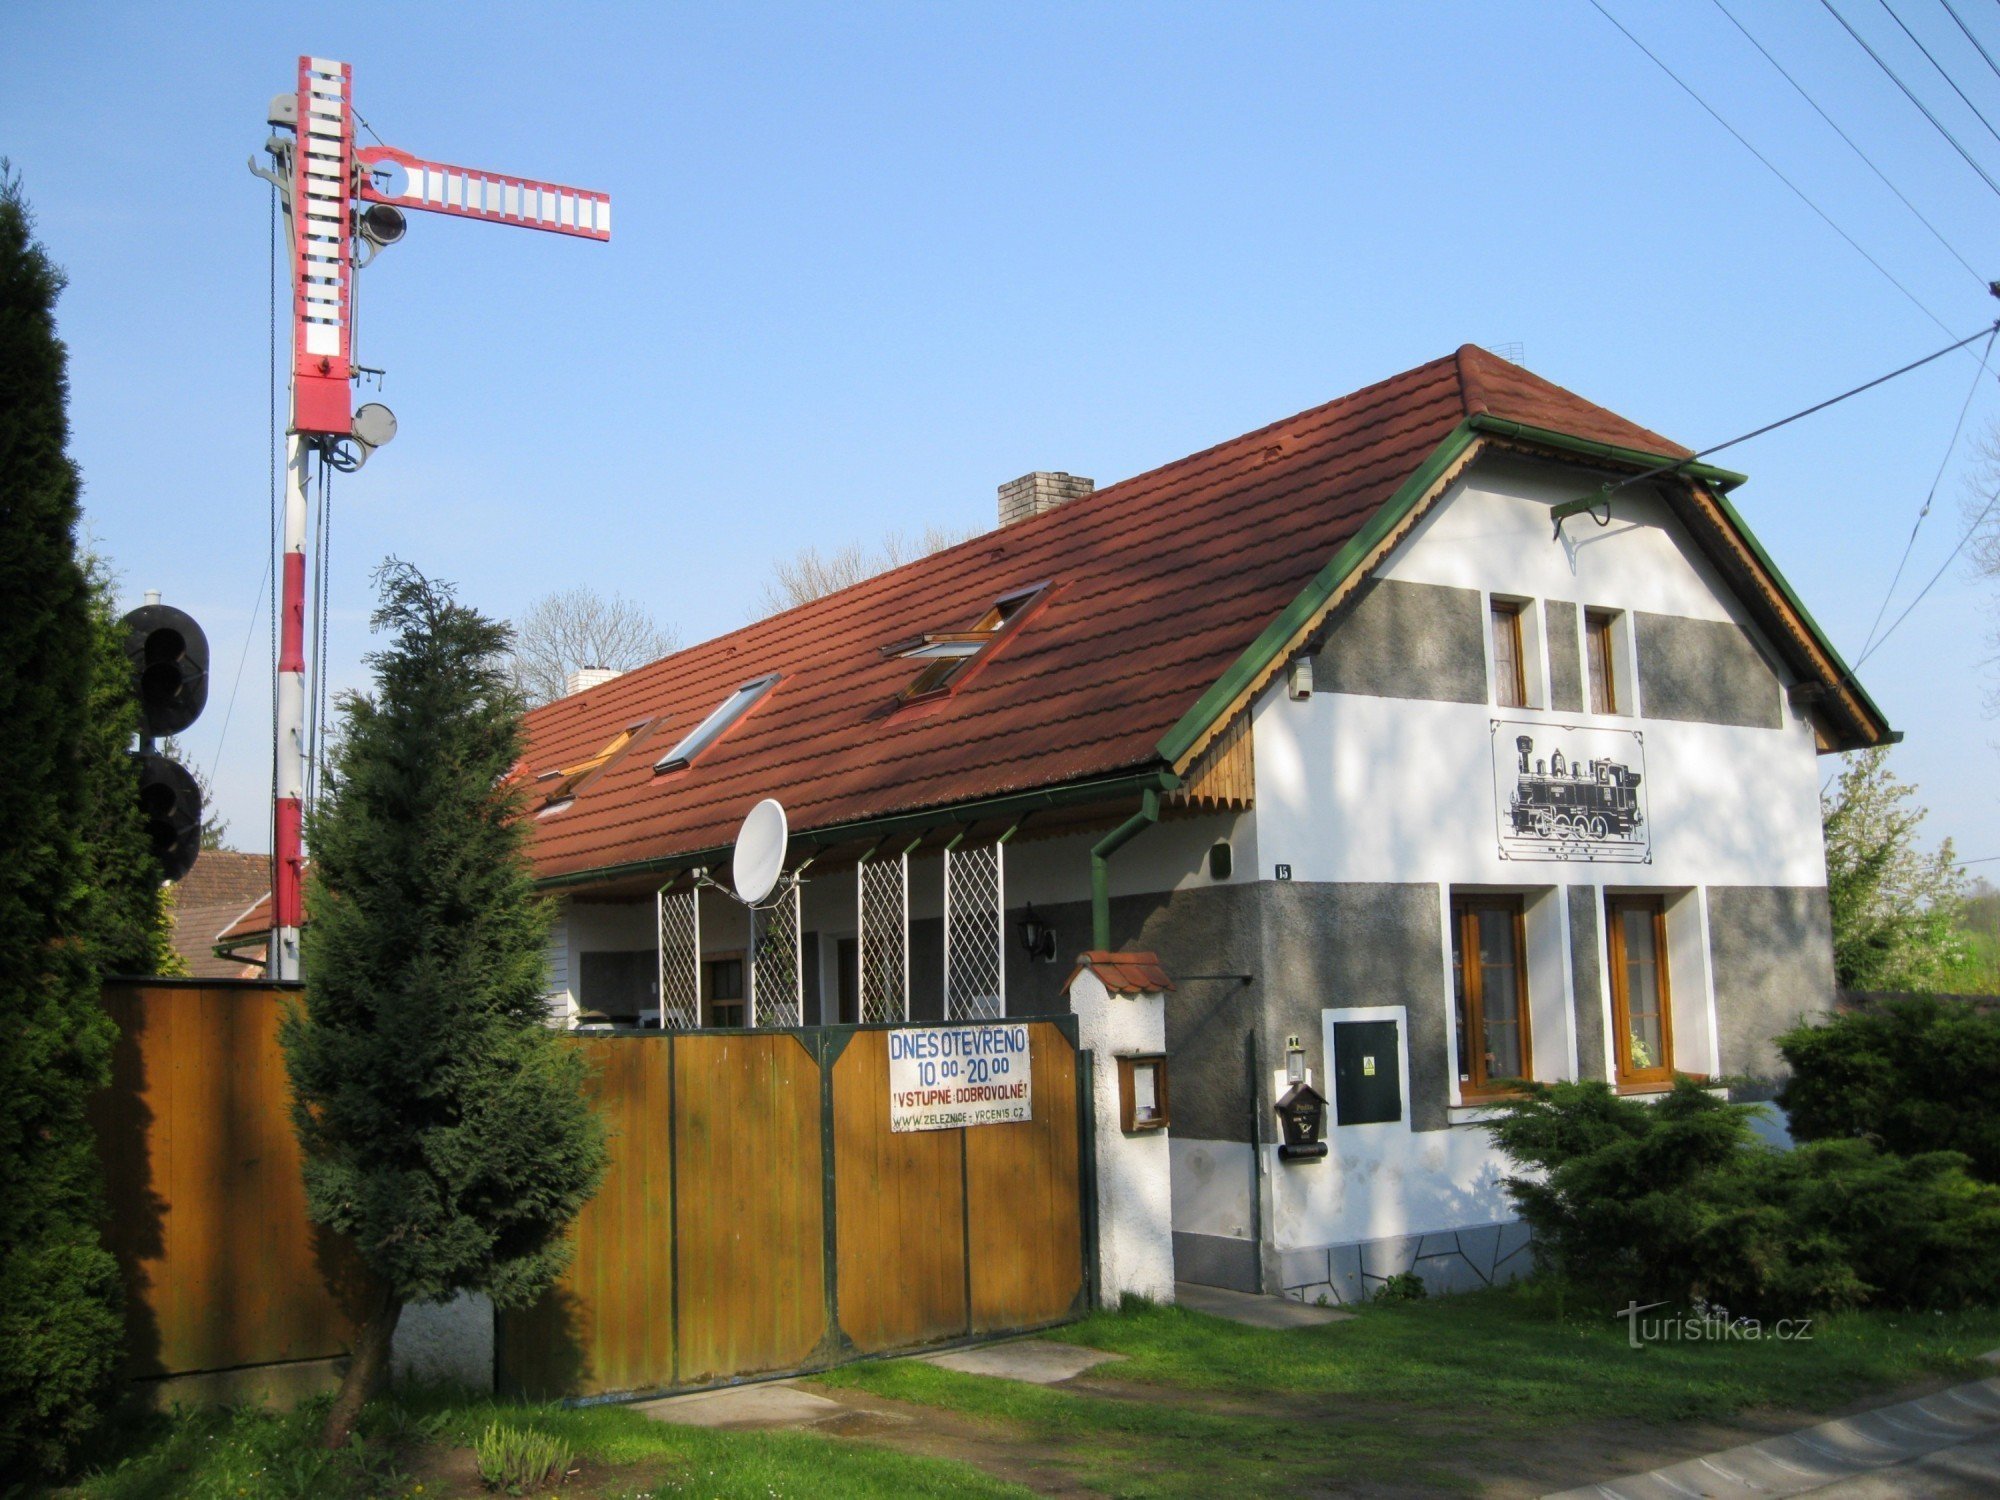 Vrčeň火车站